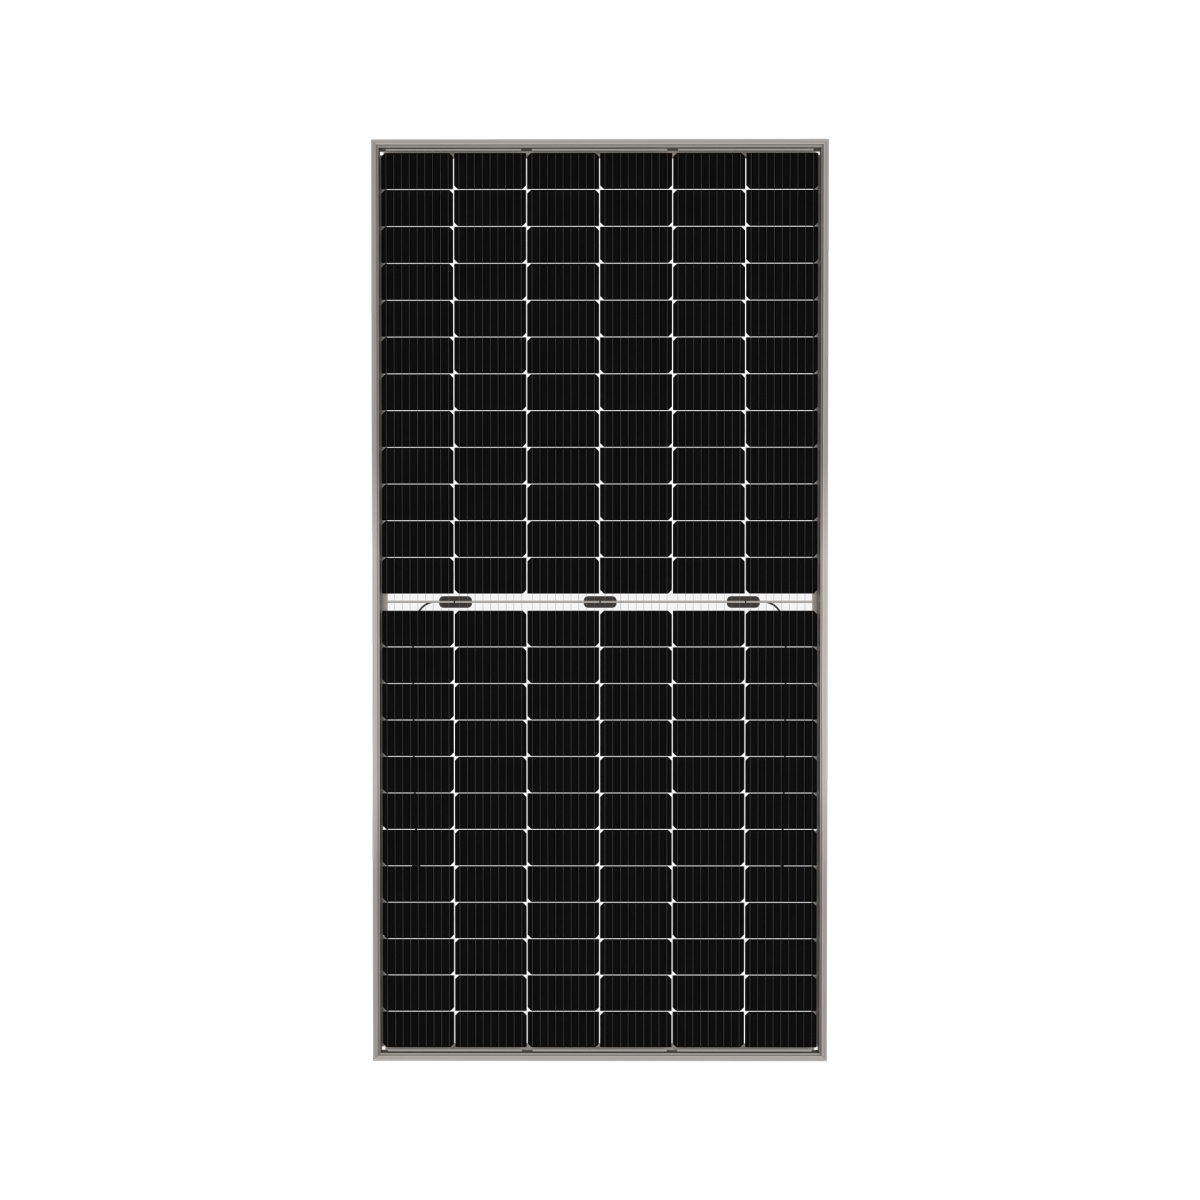 TommaTech 455Wp M6 144PM Cells Bifacial Half-Cut MB Solar Panel